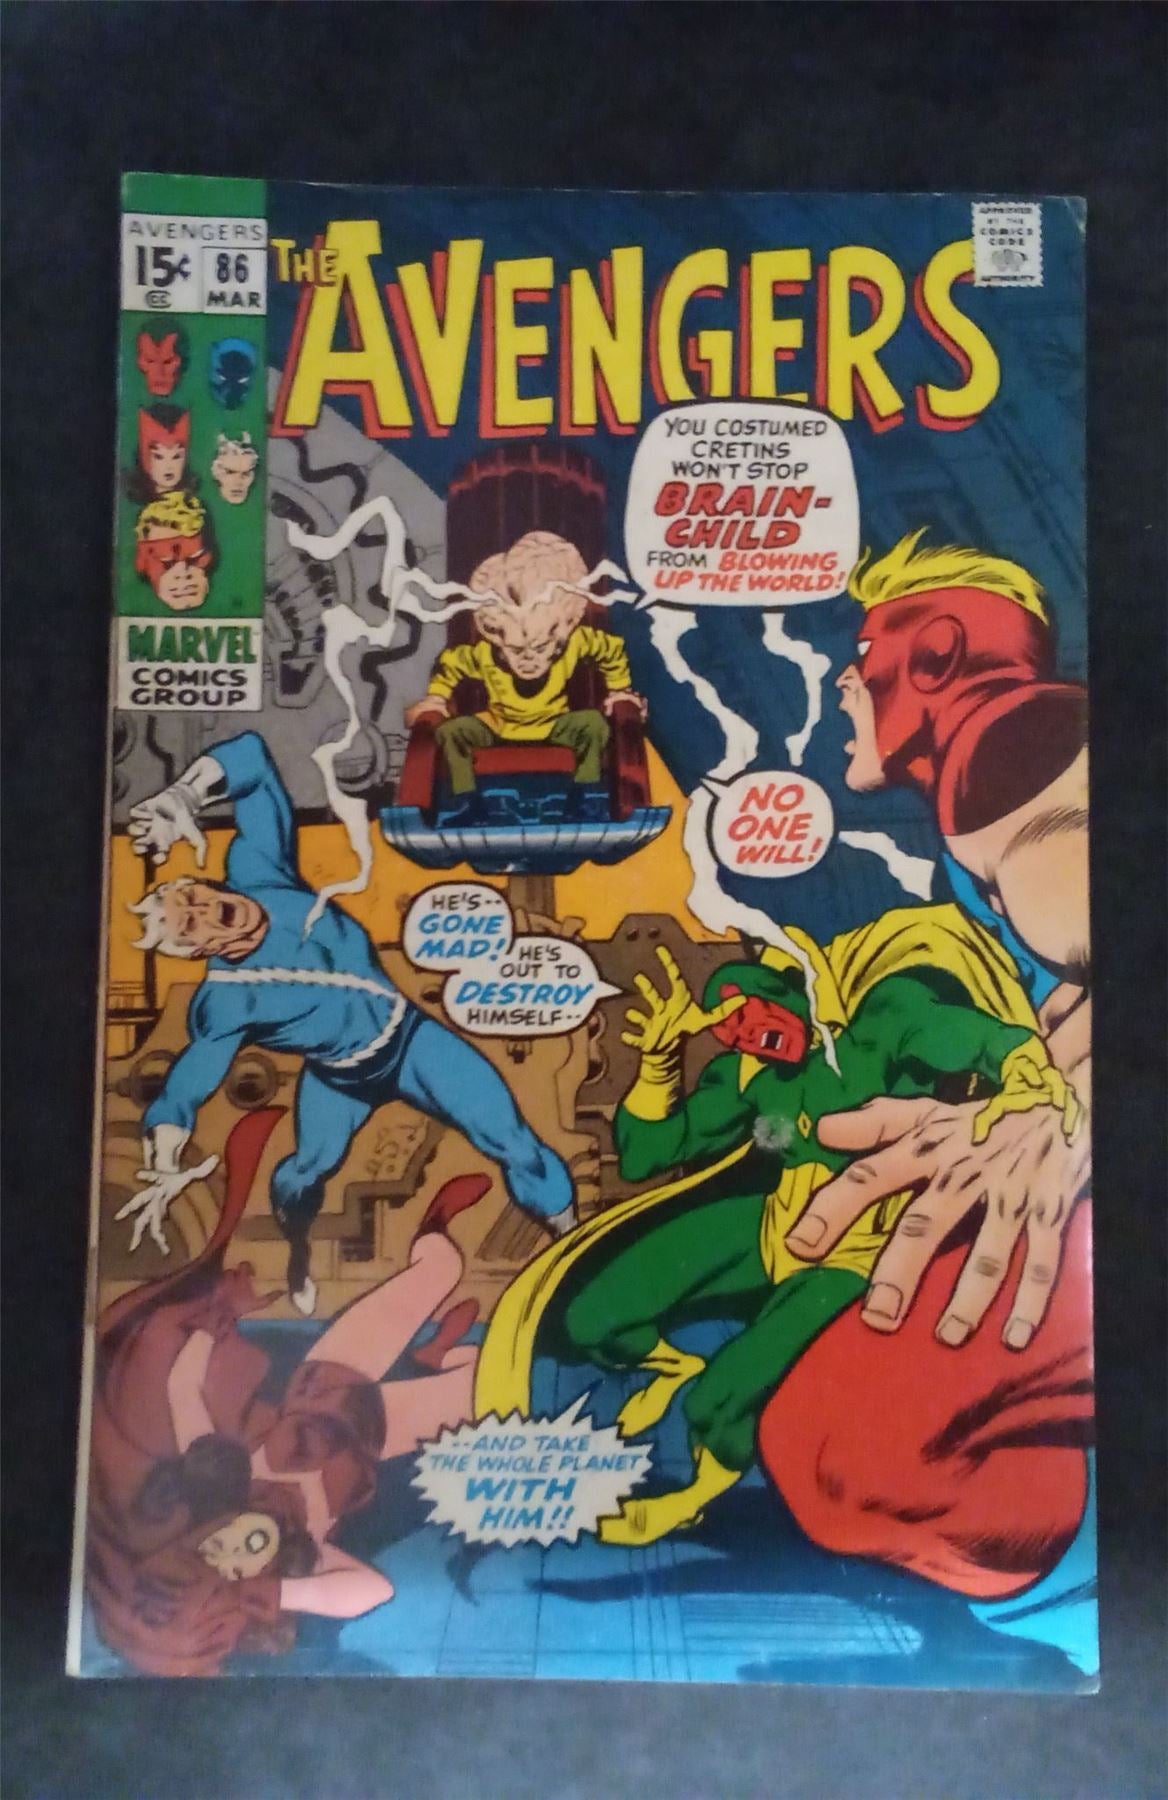 The Avengers #86 1971 marvel Comic Book